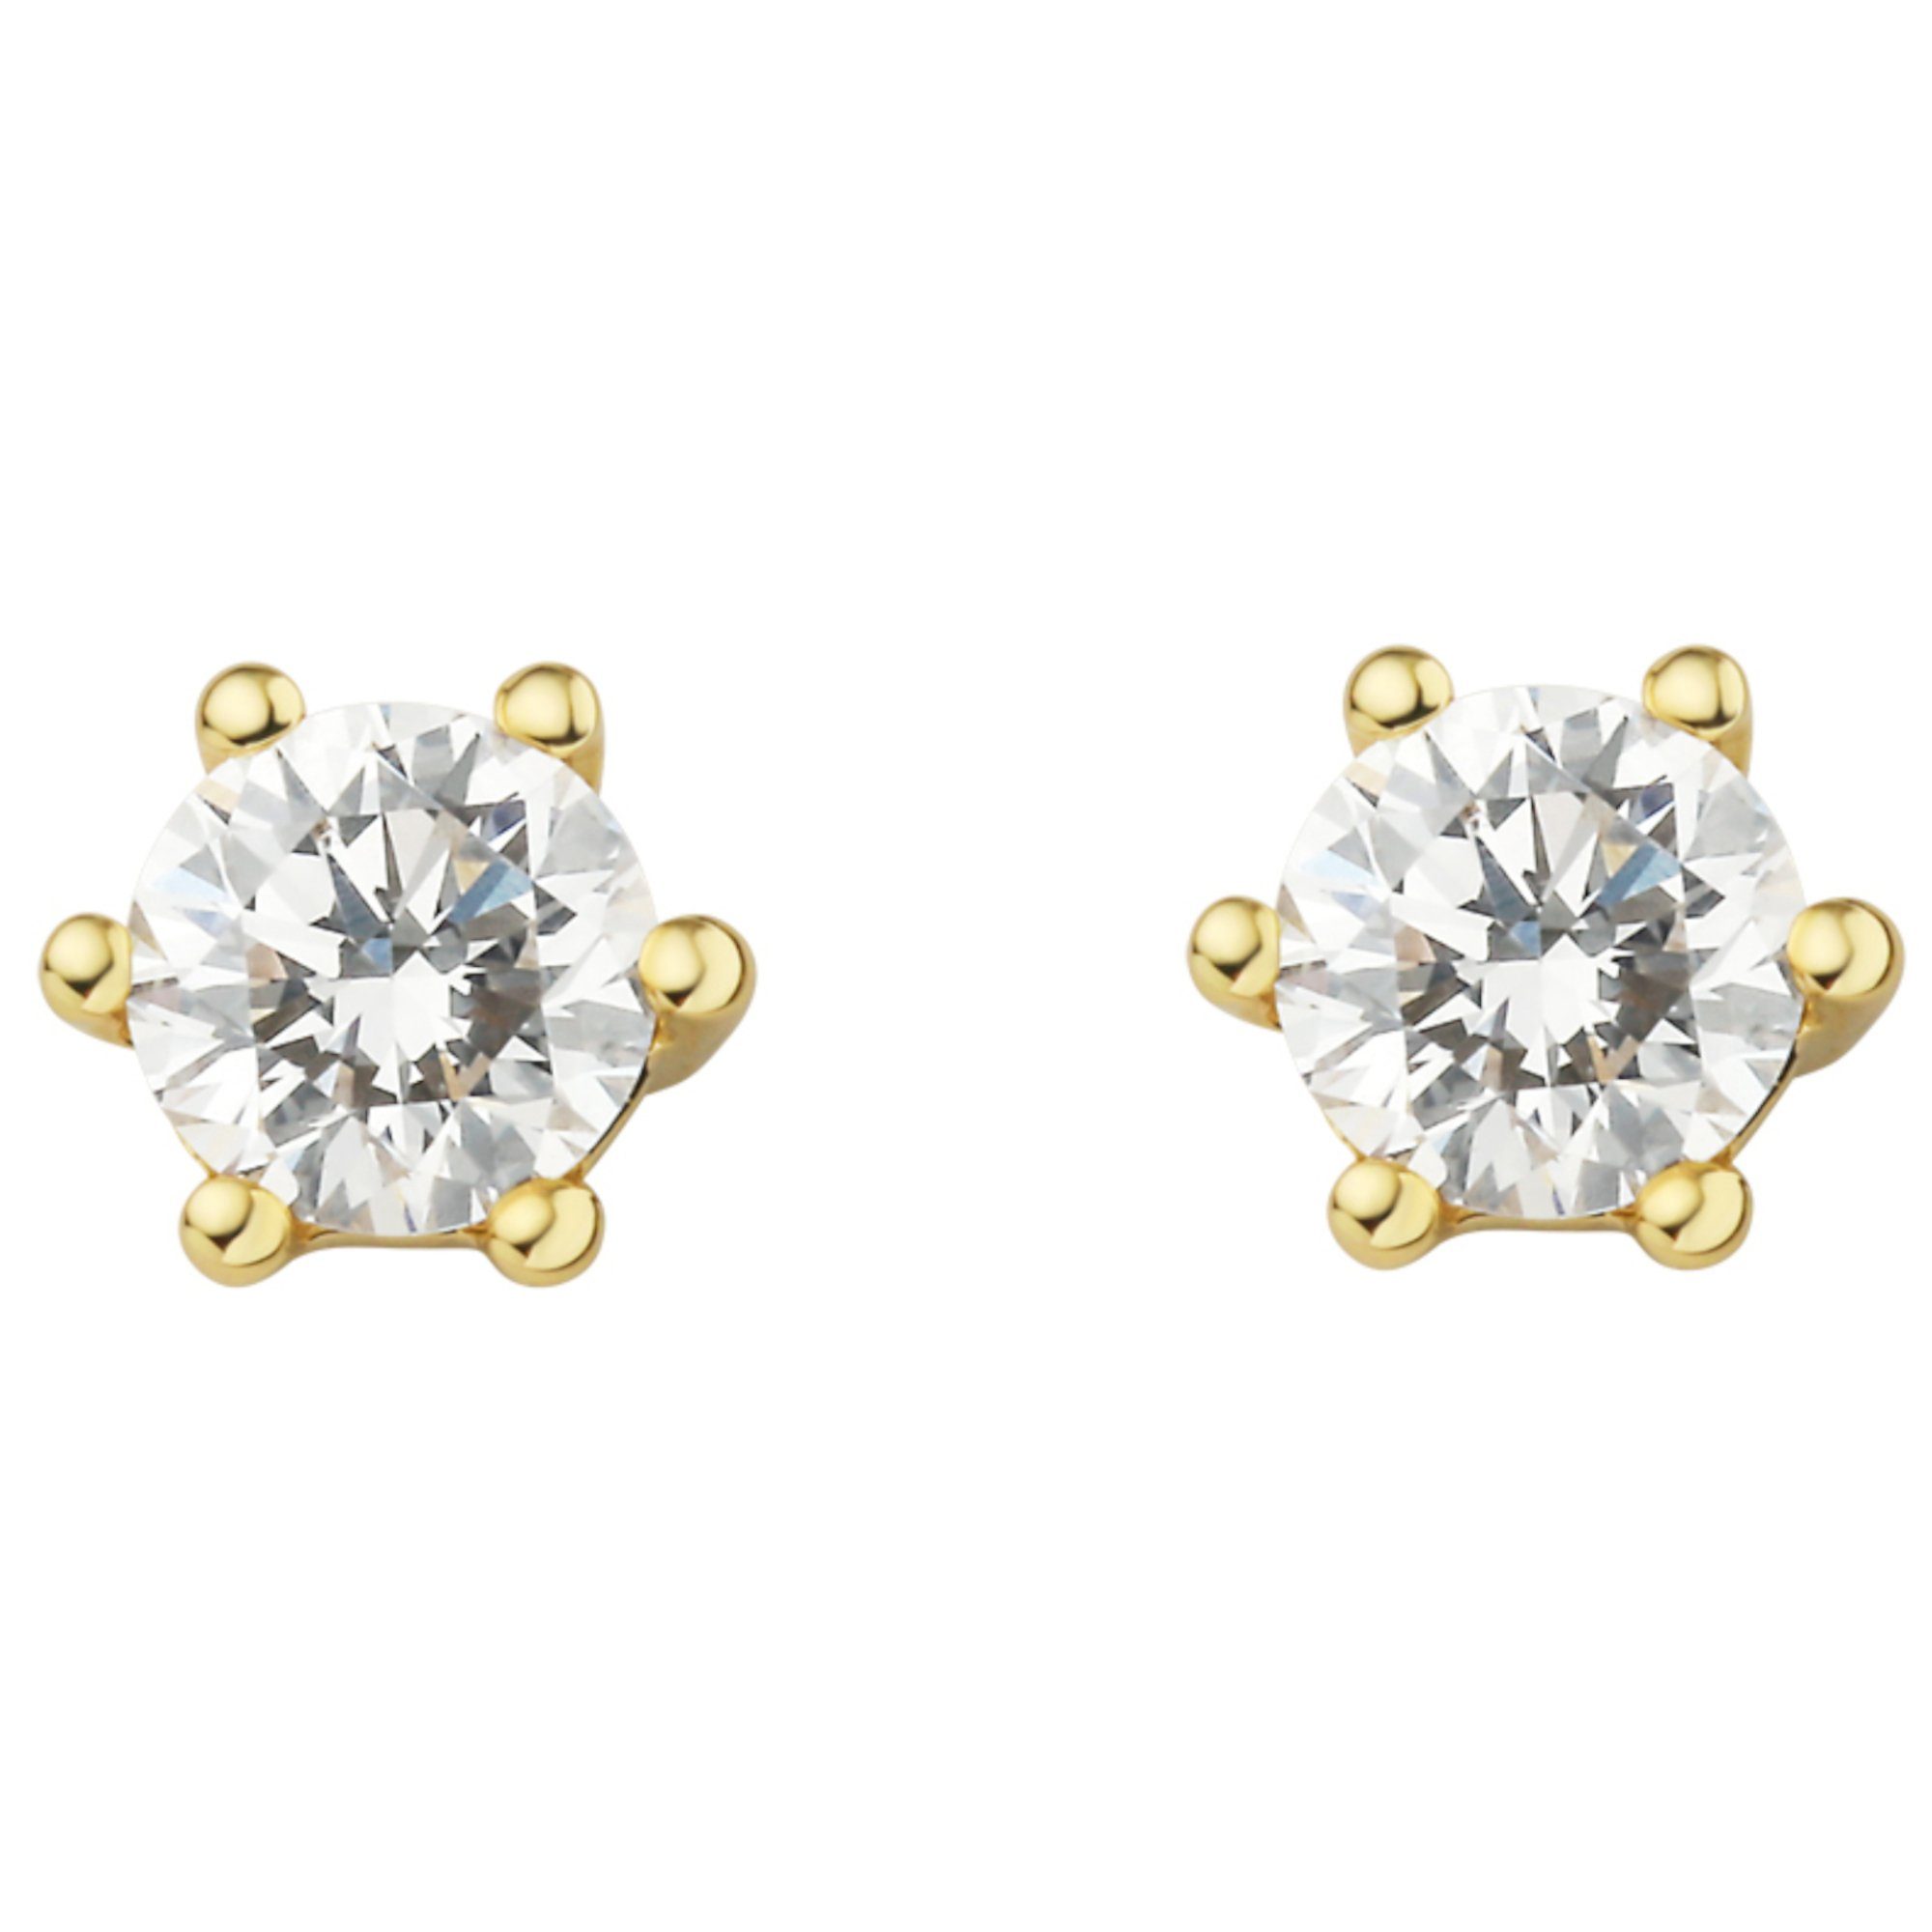 Schmuck aus Paar Ohrstecker ELEMENT Damen Gelbgold, 0.3 ct Brillant Diamant Ohrstecker Gold Ohrringe 750 ONE